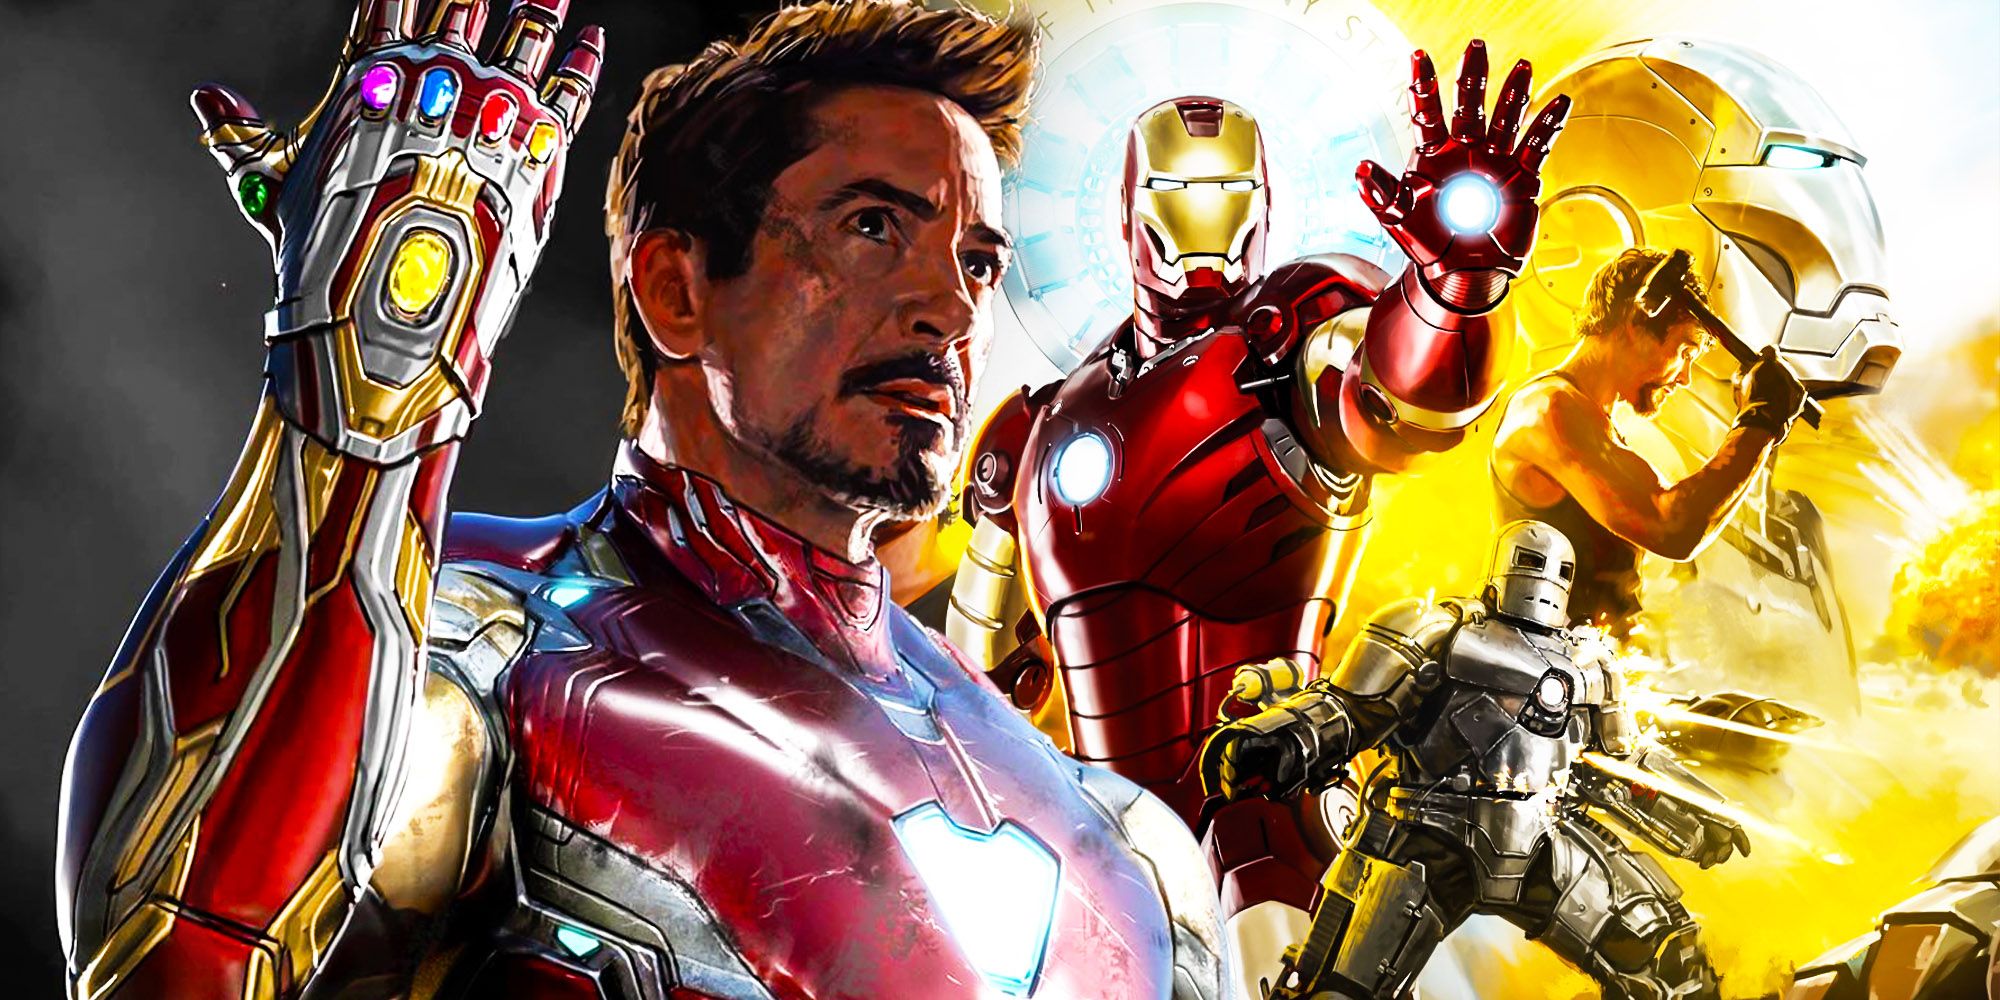 Iron man Avengers endgame Robert Downey Jr